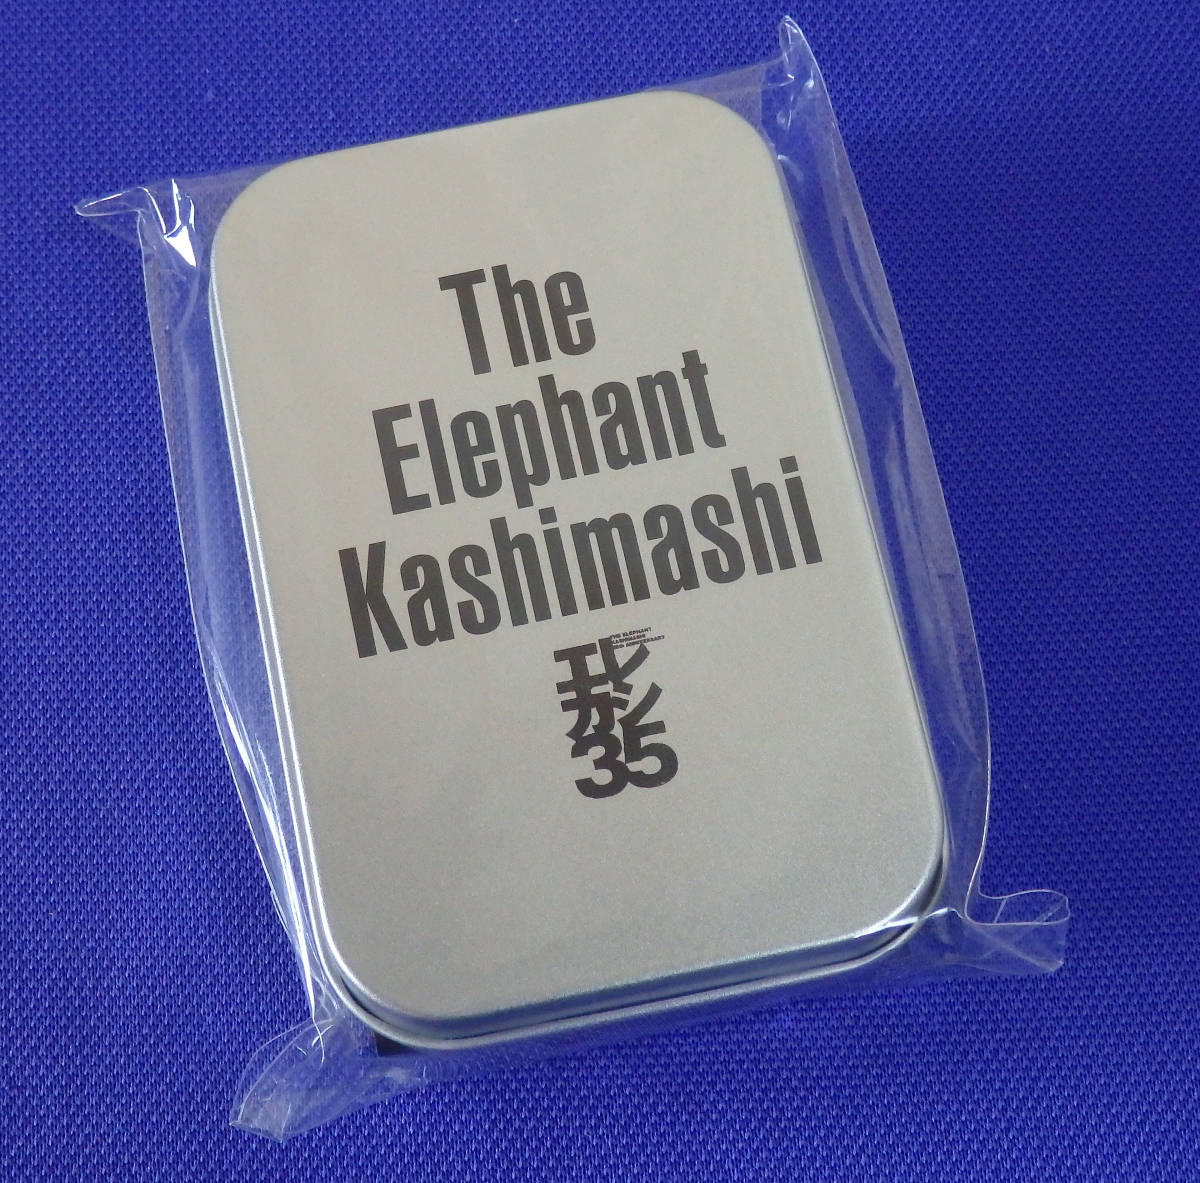  новый товар Elephant kasimasi жестяная банка в кейсе лейкопластырь комплект 